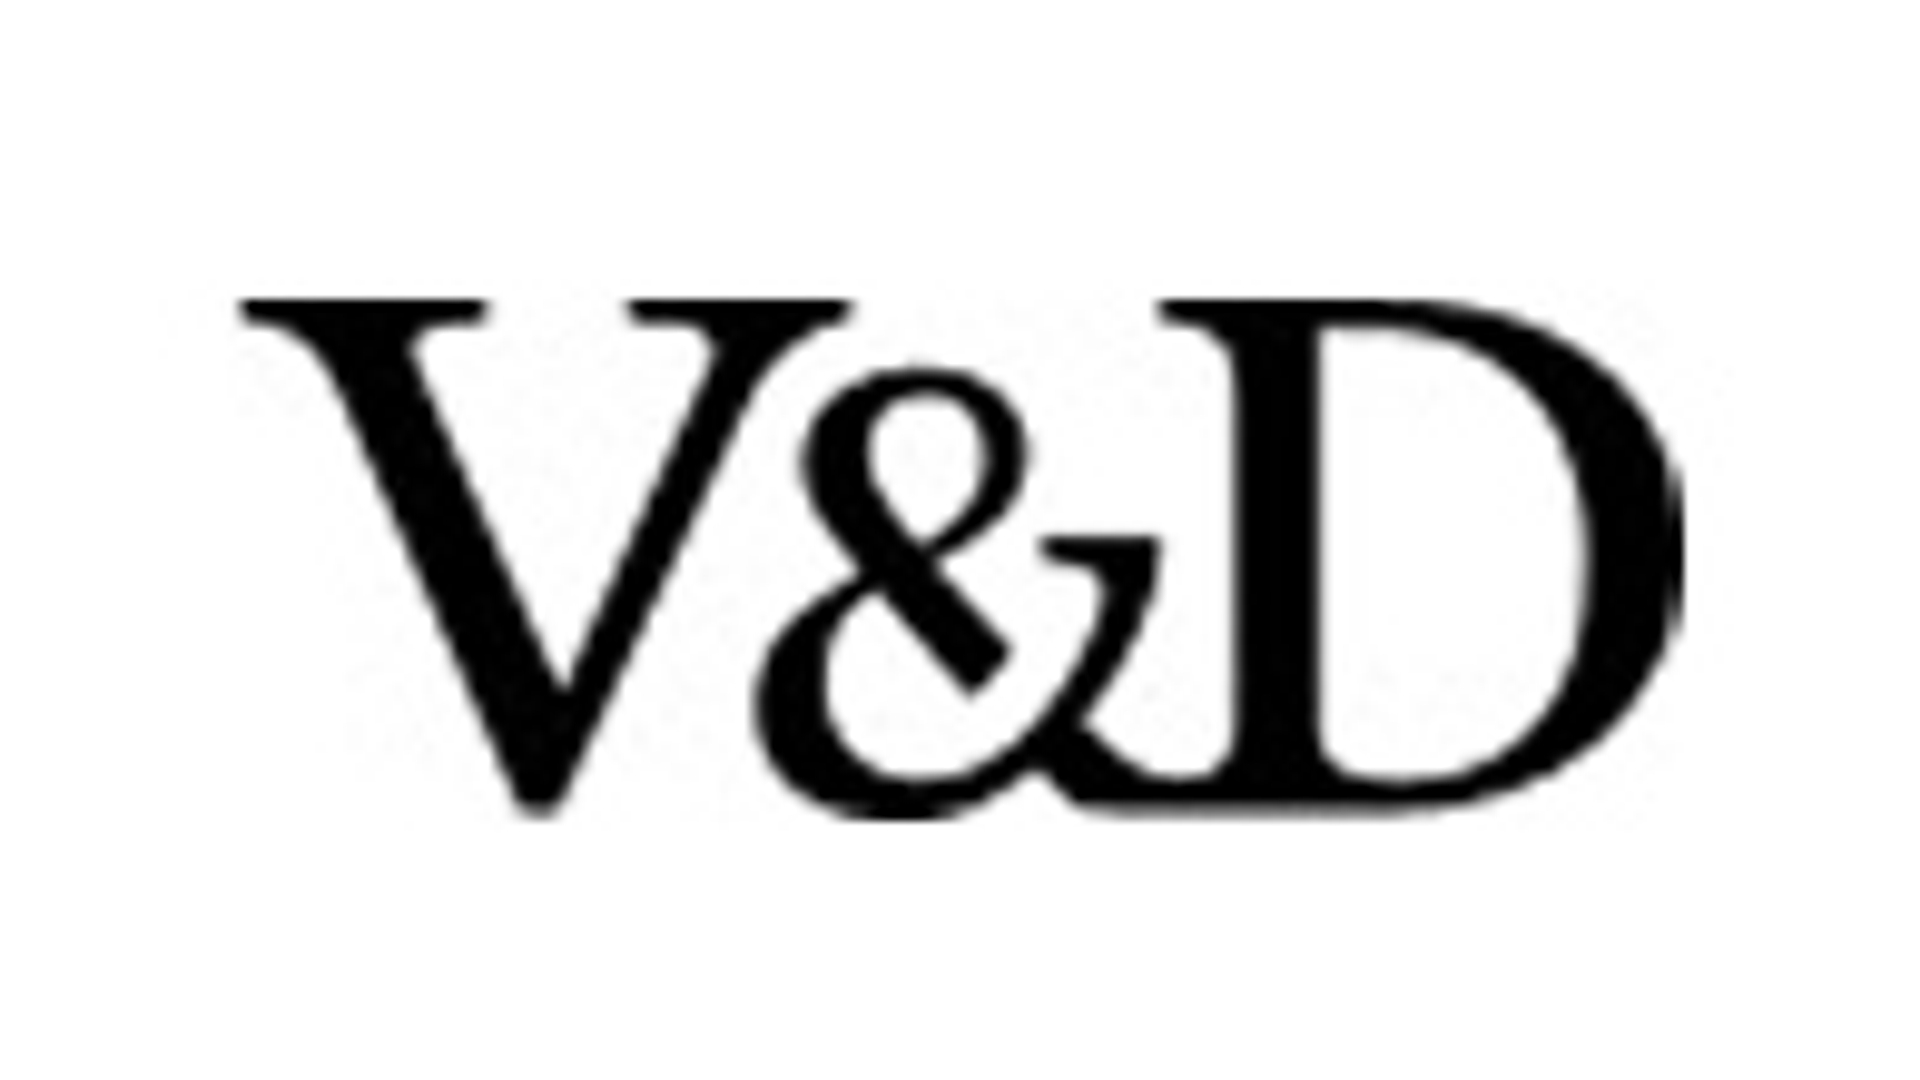 v_d_logo_03.jpg